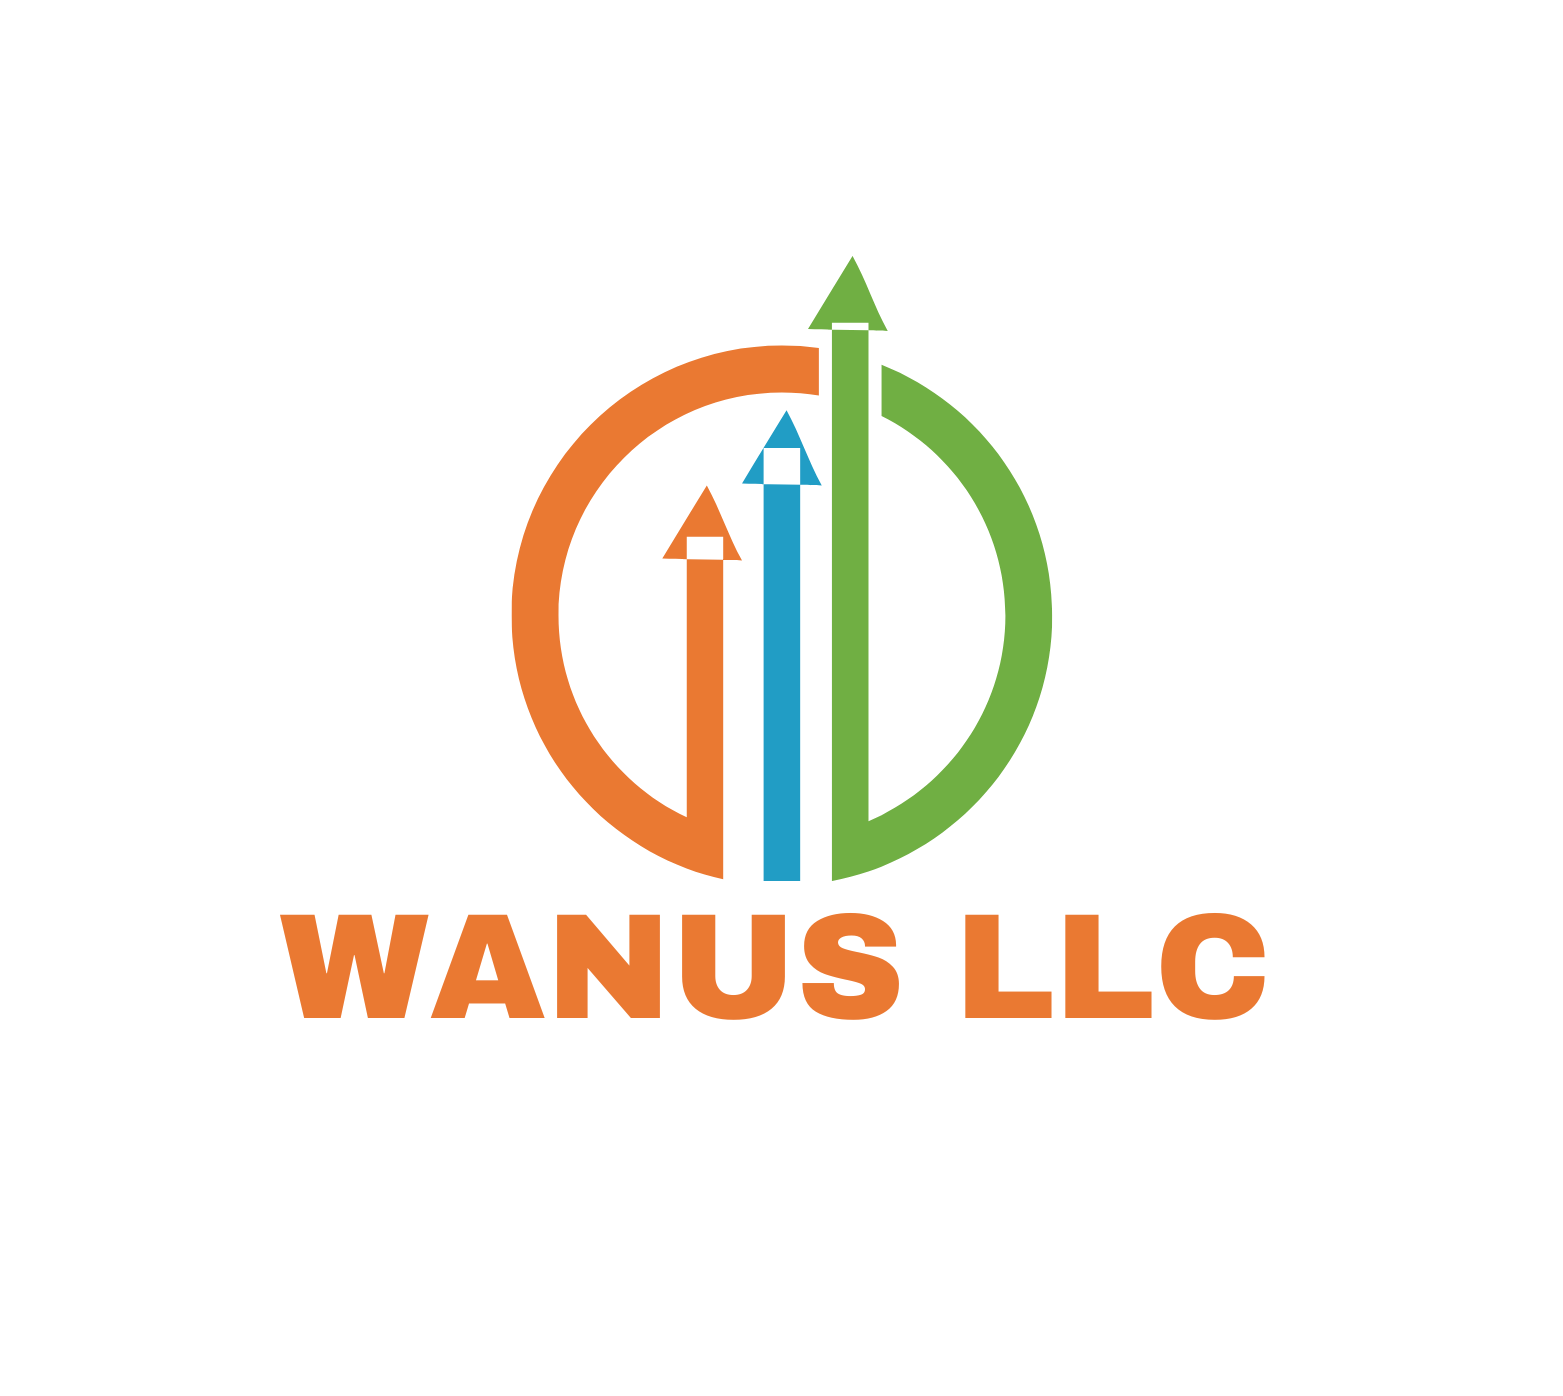 WANUS LLC